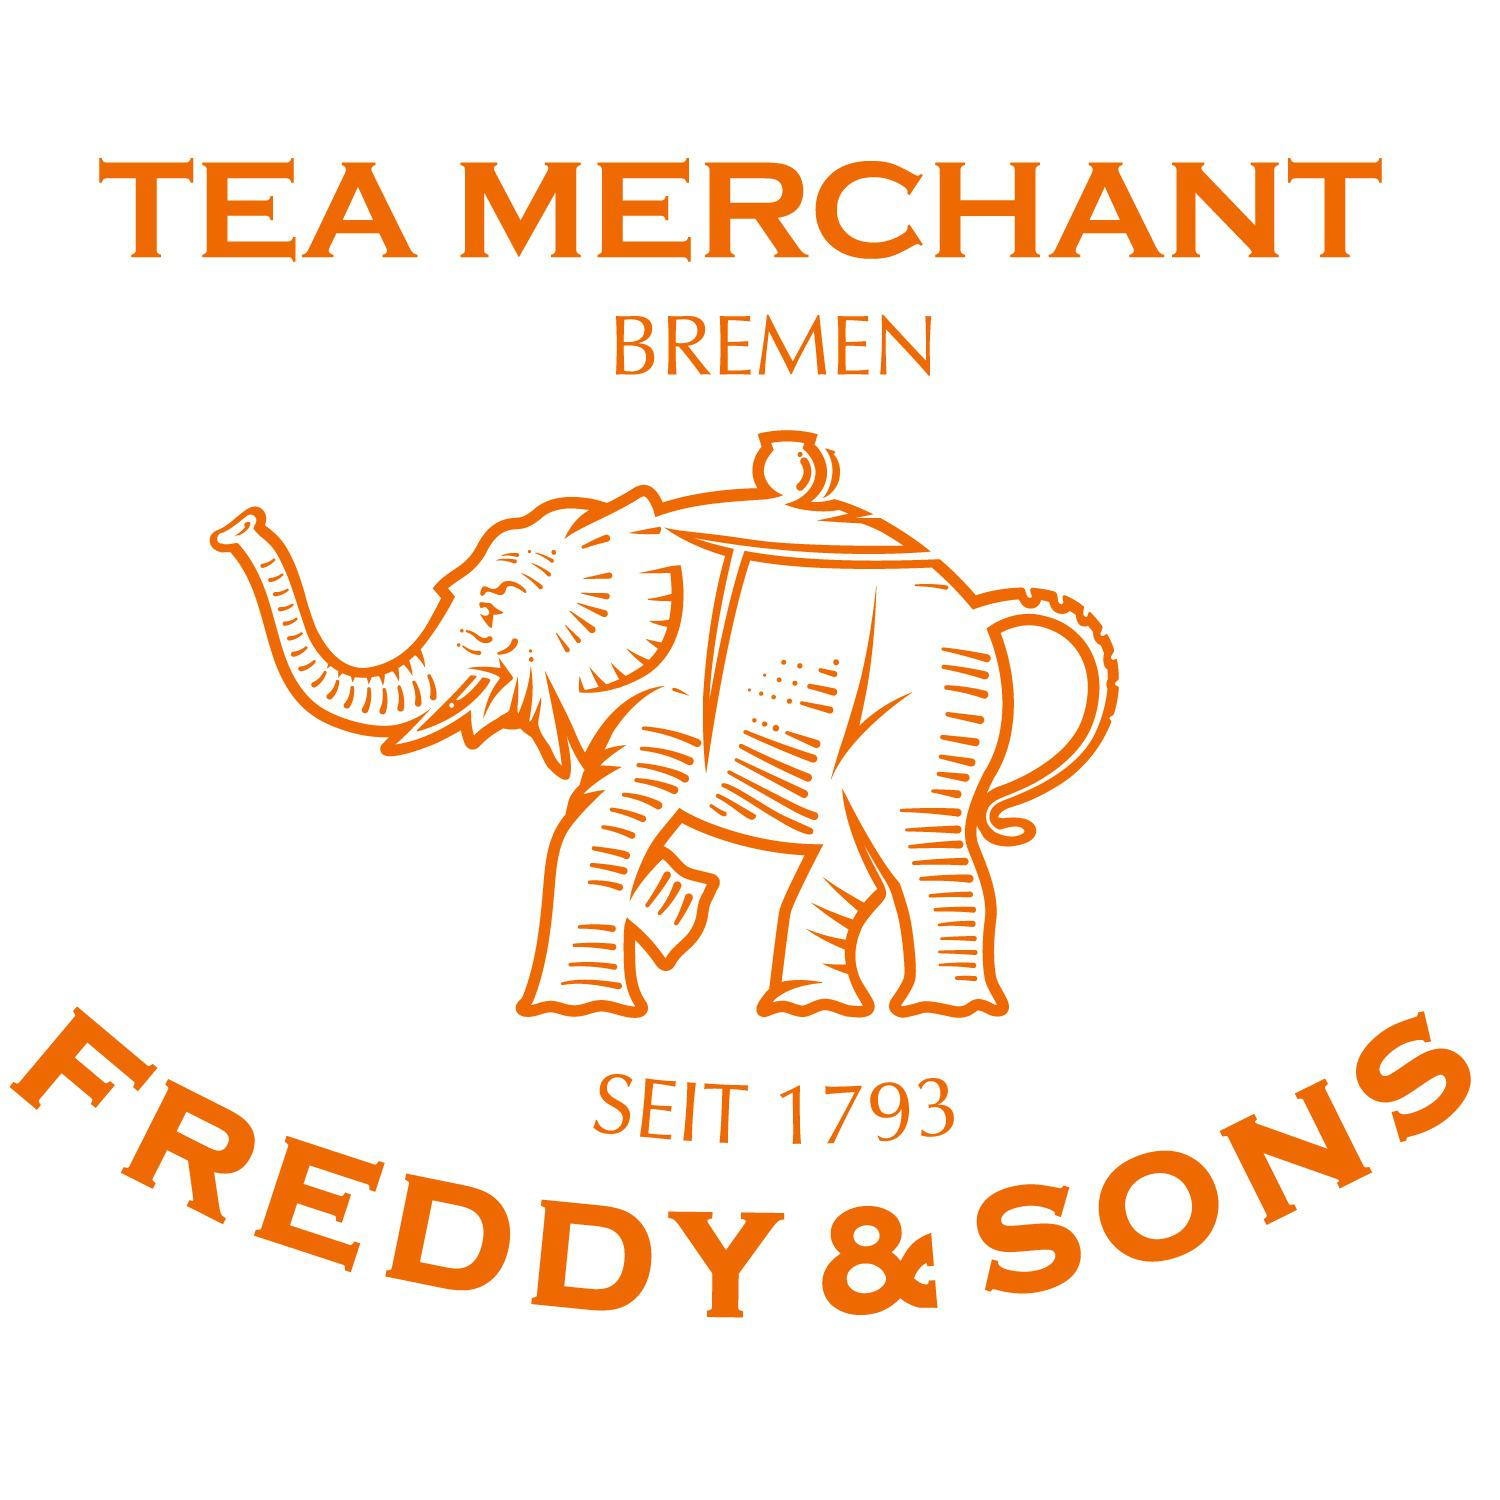 Tea Merchant Freddy & Sons in Bremen - Logo